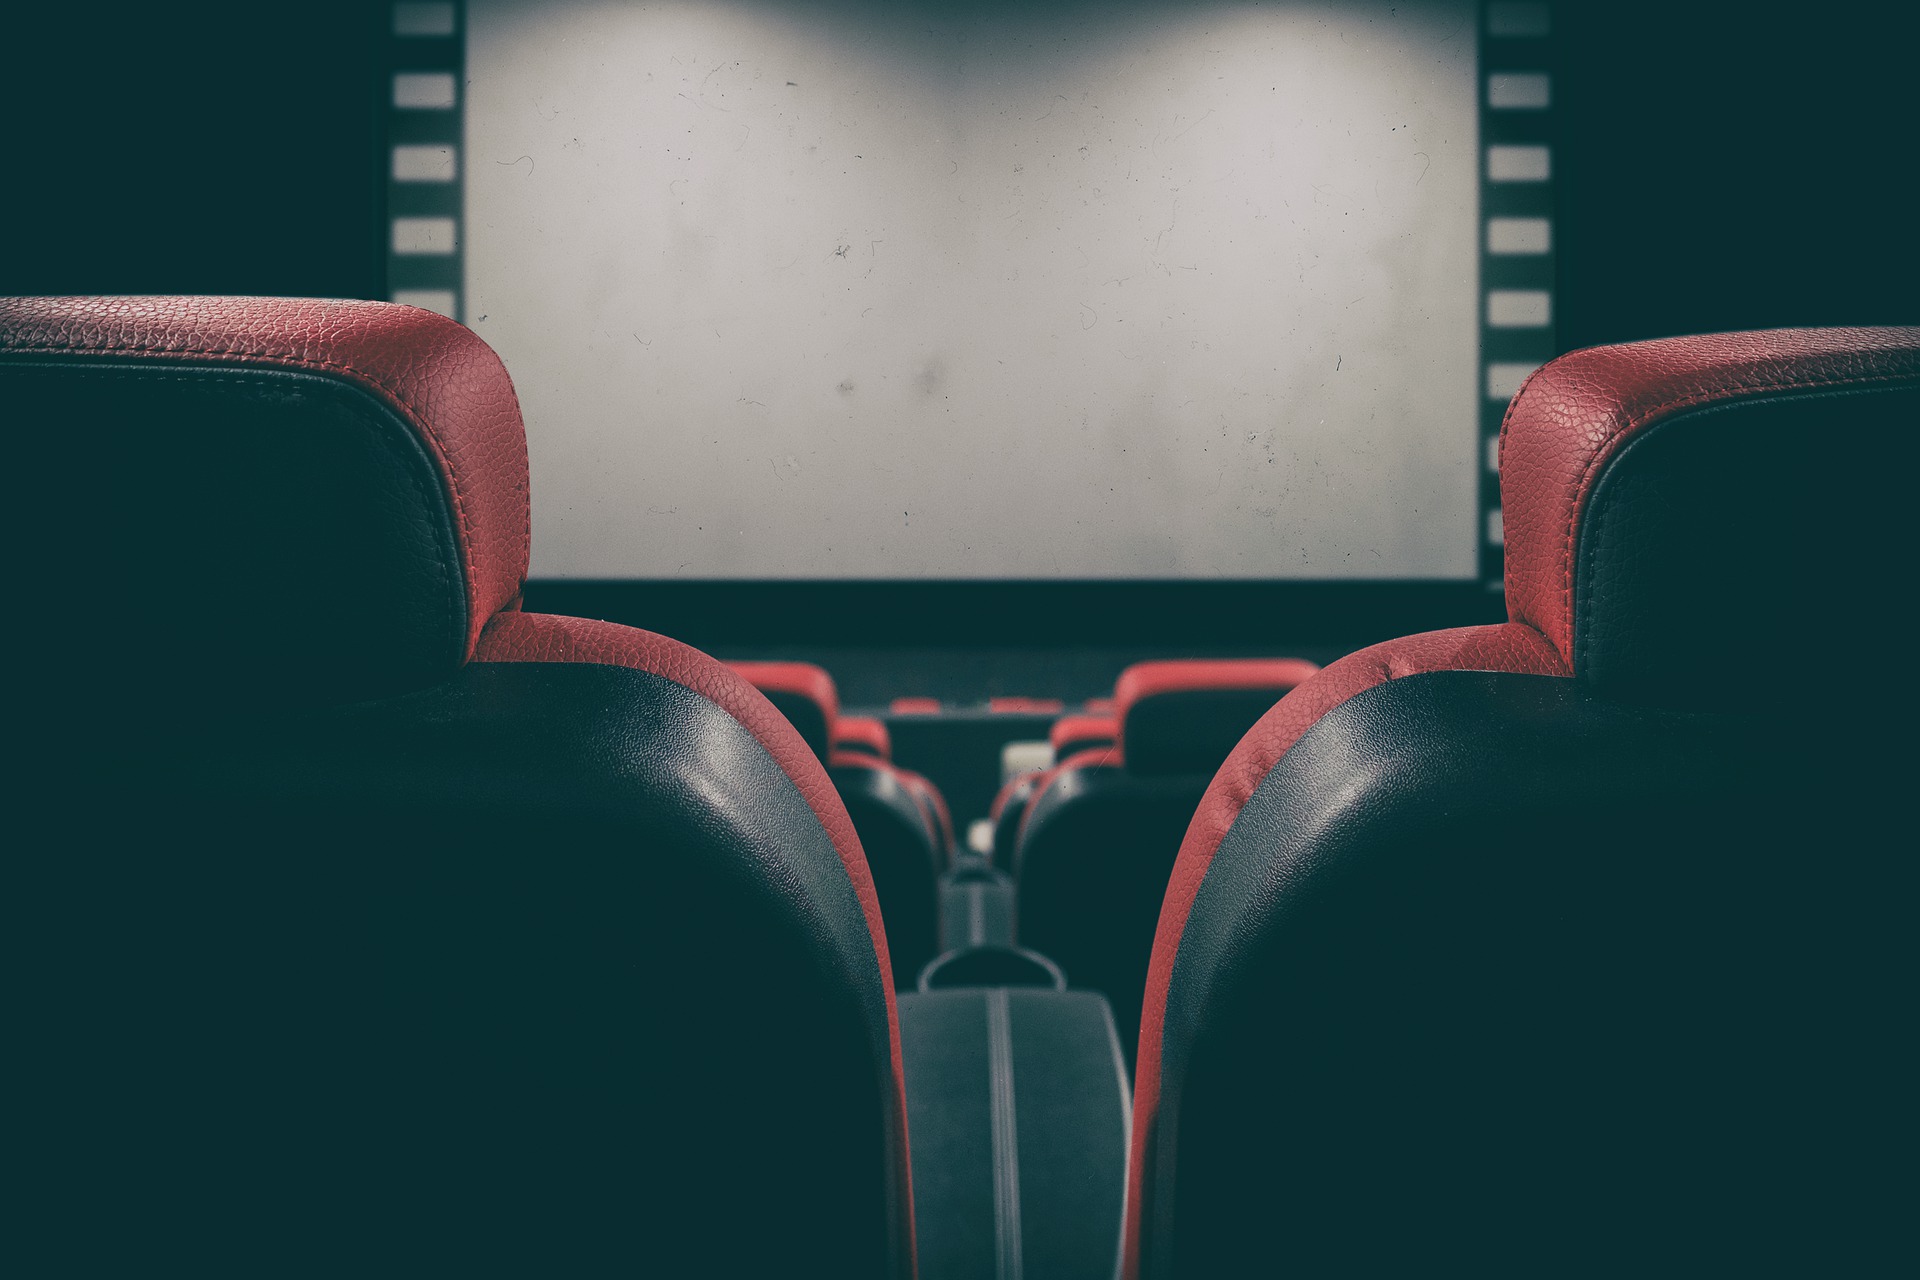 Kino: Betreiber vermieten leere Säle an Gamer